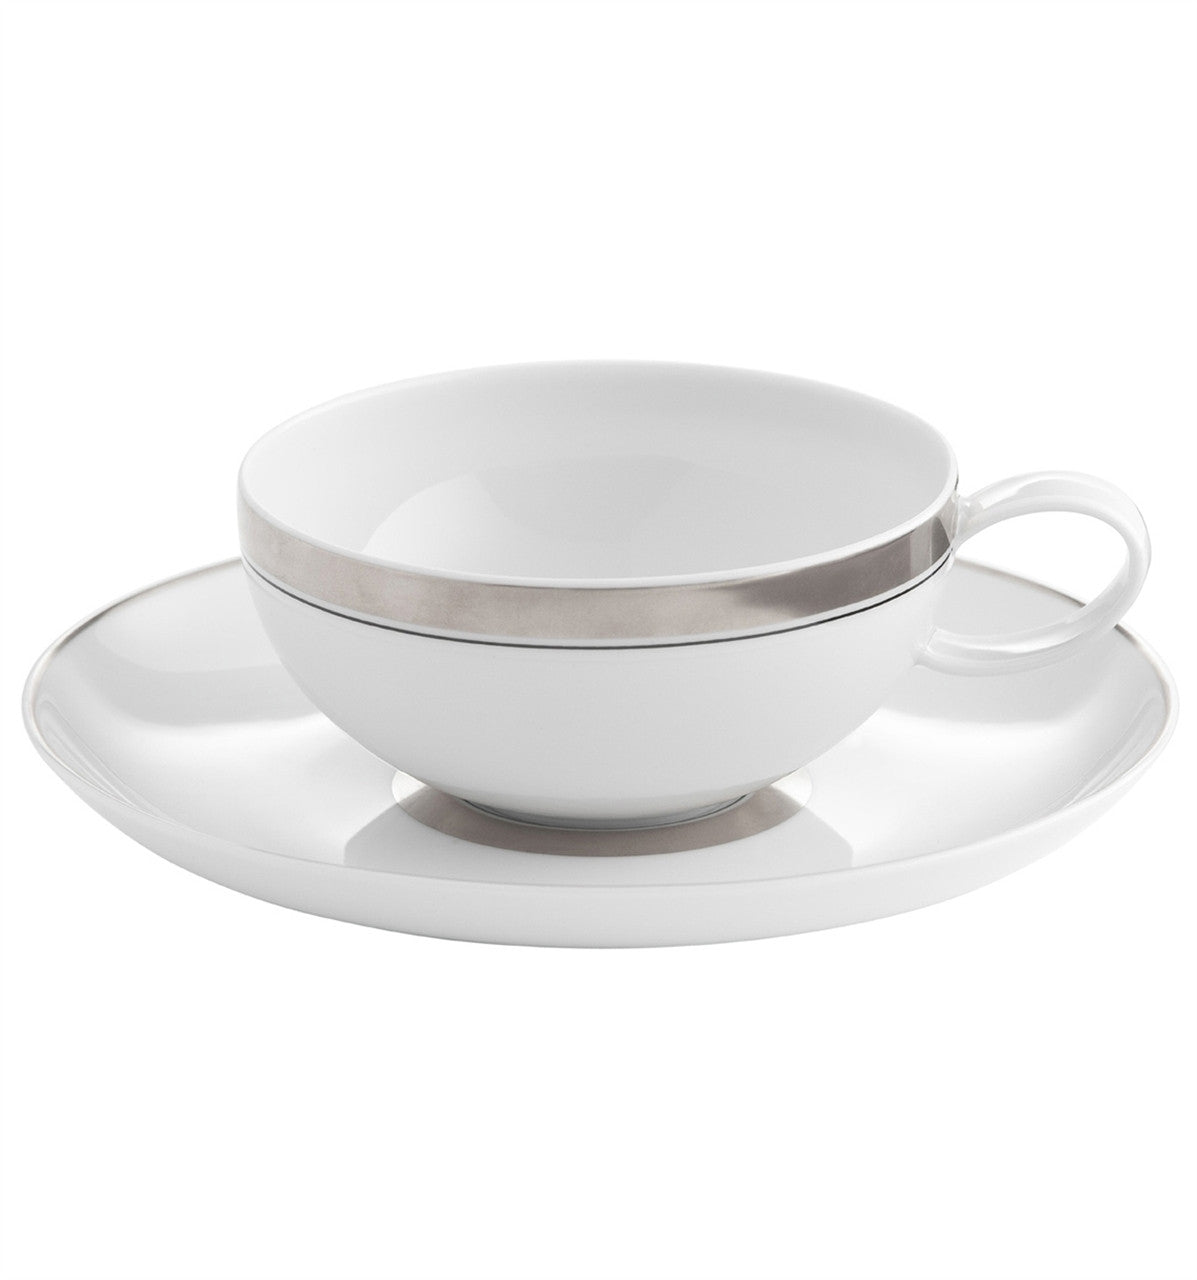 Domo Platina Teacup & Saucer - RSVP Style